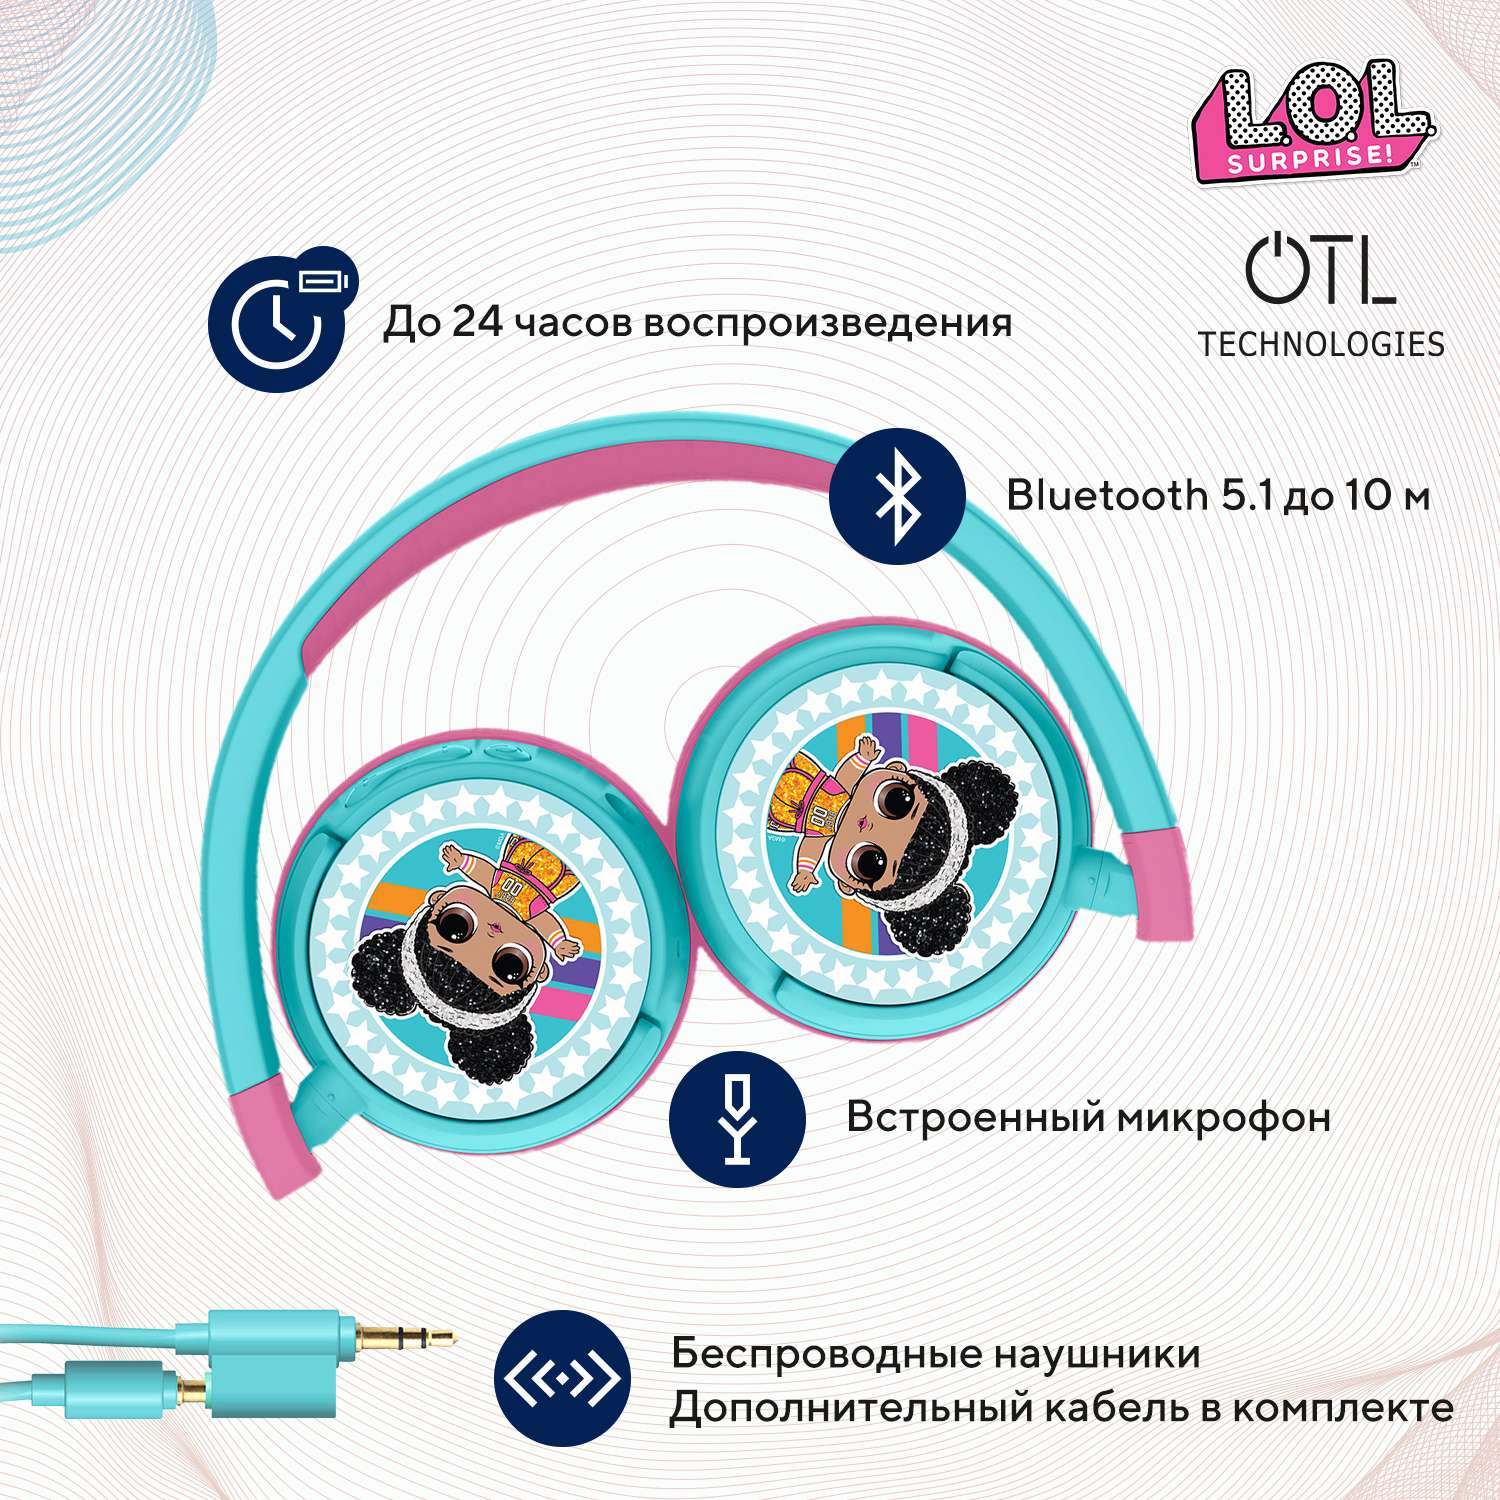 Наушники беспроводные OTL Technologies детские L.O.L. Surprise - фото 2